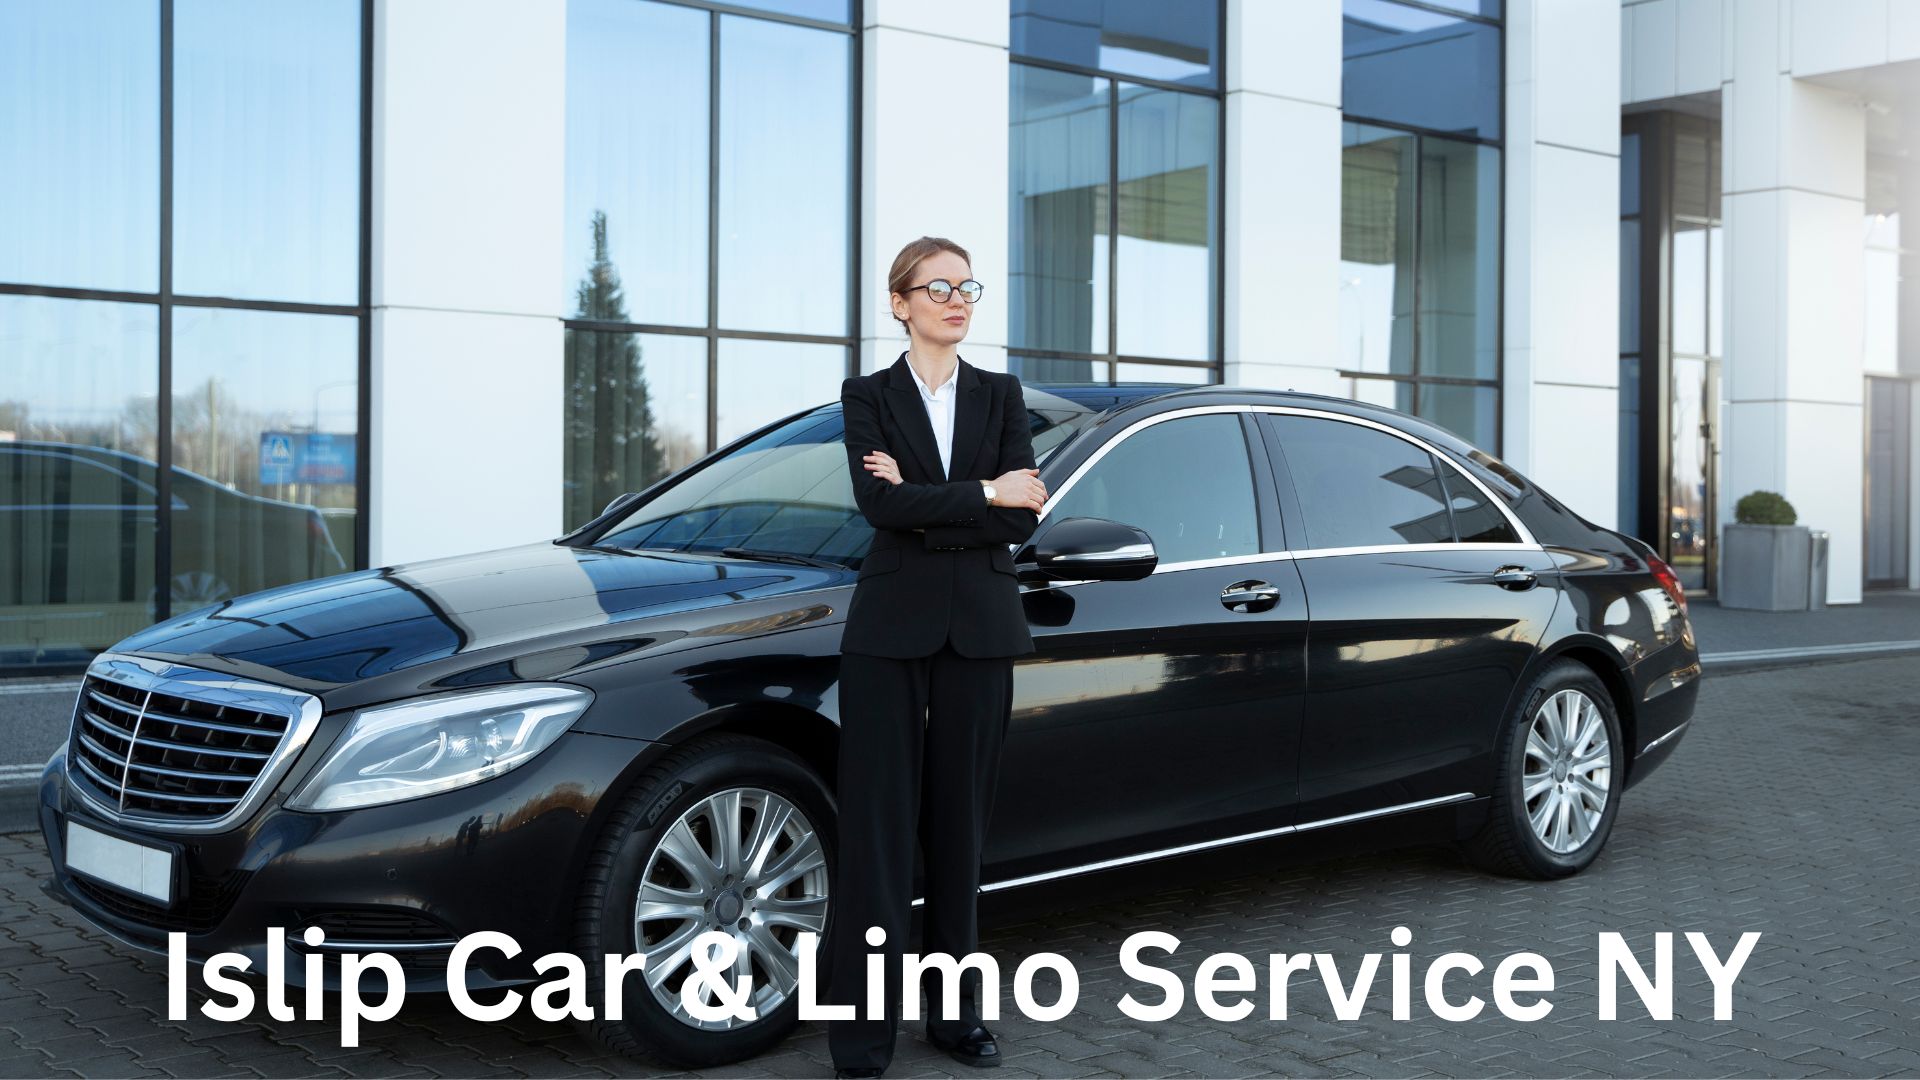 Islip Car & Limo Service NY